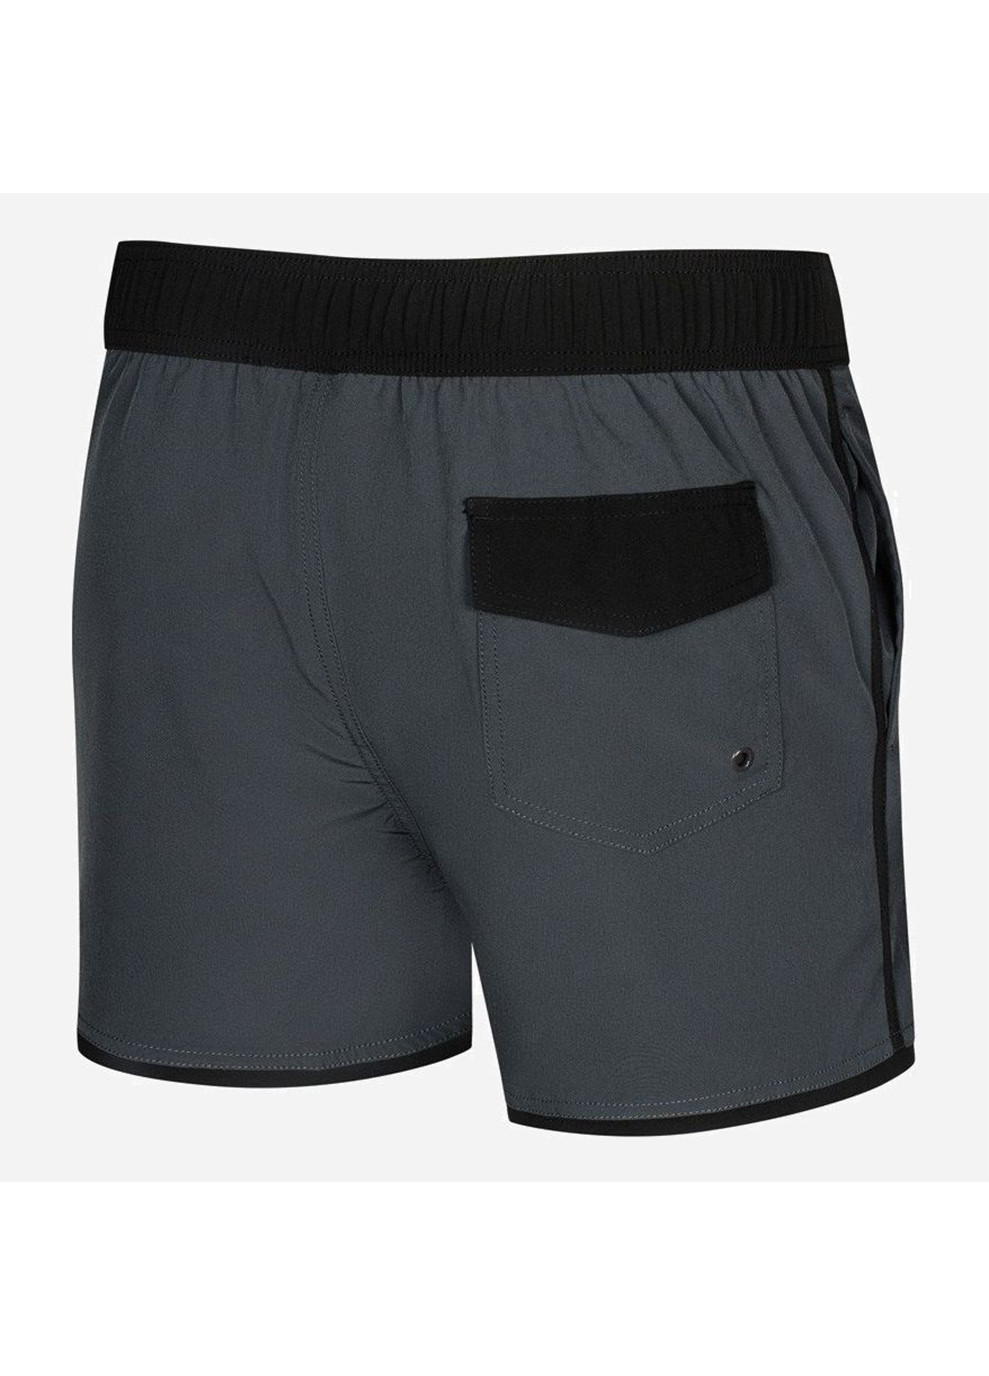 Мужские серые спортивные пляжные шорты axel 337-37 темно-серый/черный Aqua Speed